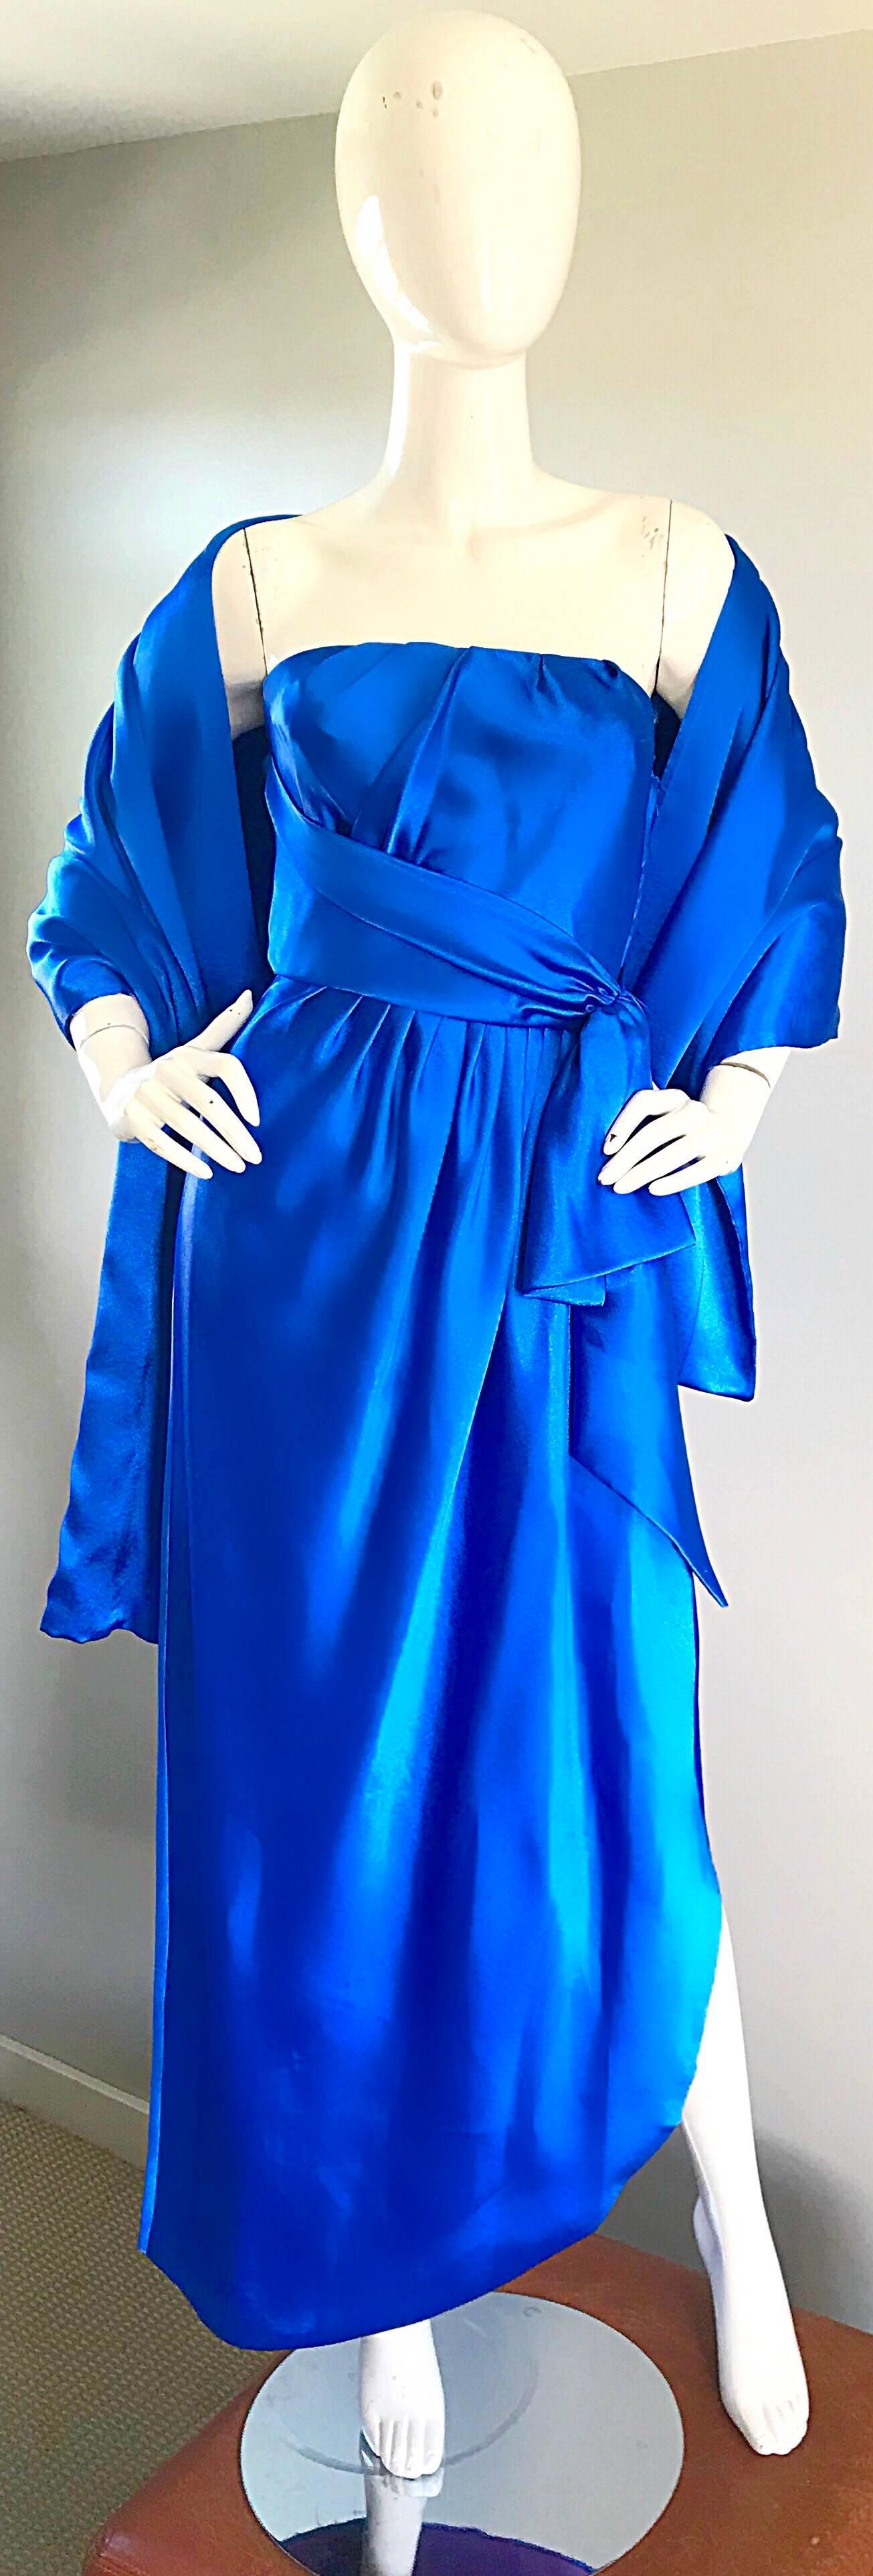 Magnifique robe de soirée en satin bleu royal sans bretelles FRANK USHER pour NEIMAN MARCUS, datant des années 70, et châle assorti ! Le corsage est ajusté et la ceinture latérale est attachée. Le corsage intérieur désossé maintient tout en place.